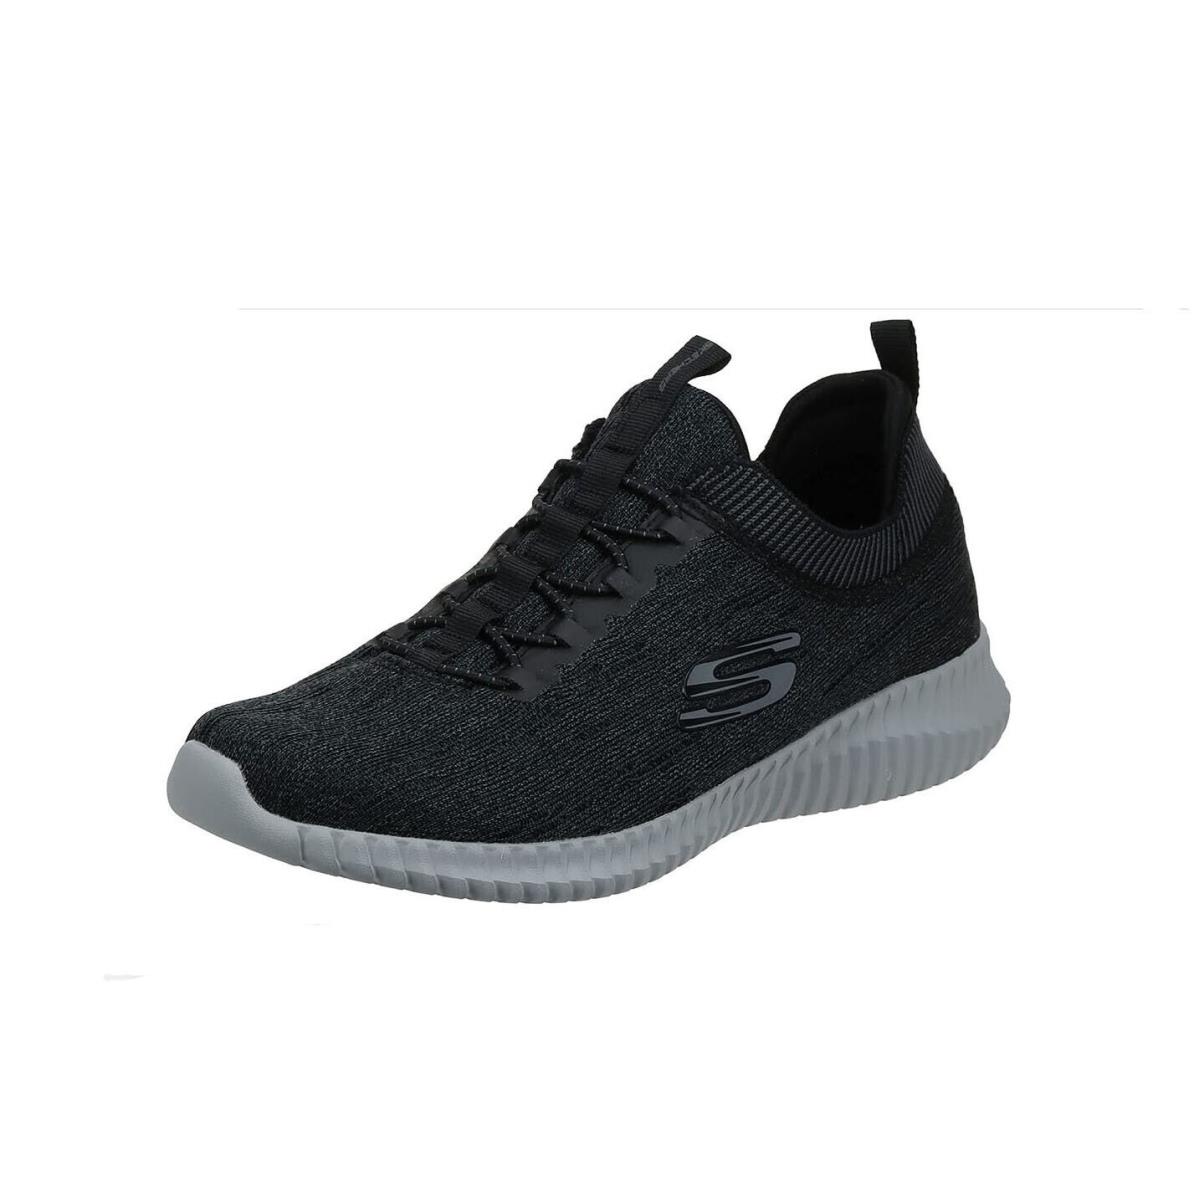 Skechers shoes Hartnell - Black 1